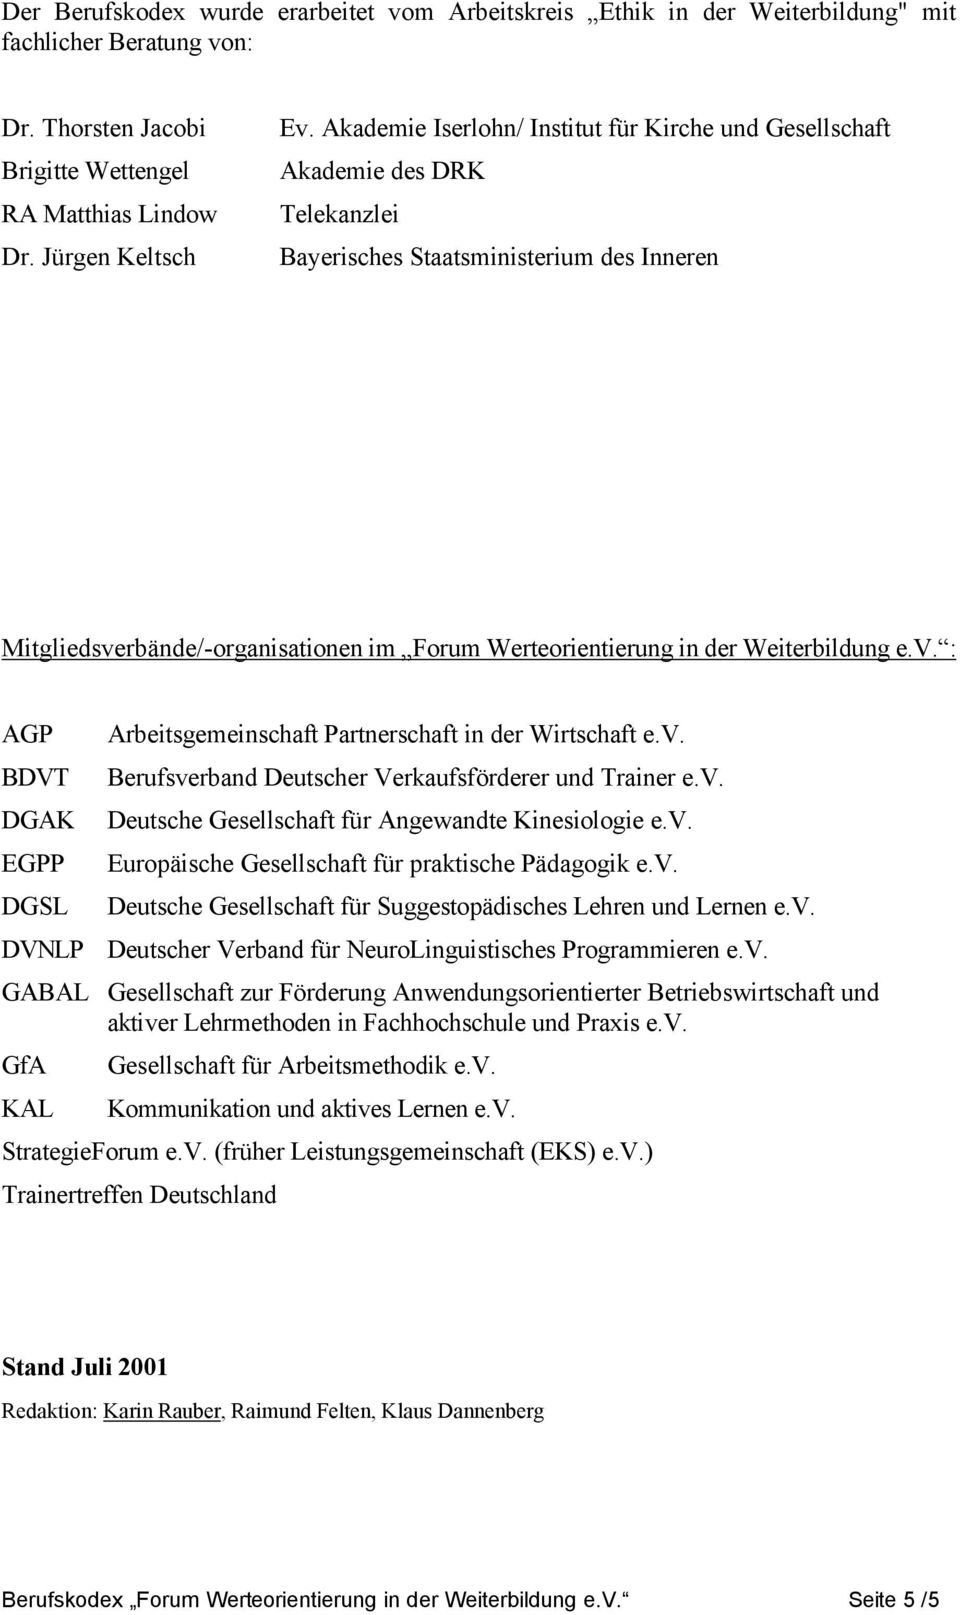 Weiterbildung e.v. : AGP BDVT DGAK EGPP DGSL Arbeitsgemeinschaft Partnerschaft in der Wirtschaft e.v. Berufsverband Deutscher Verkaufsförderer und Trainer e.v. Deutsche Gesellschaft für Angewandte Kinesiologie e.